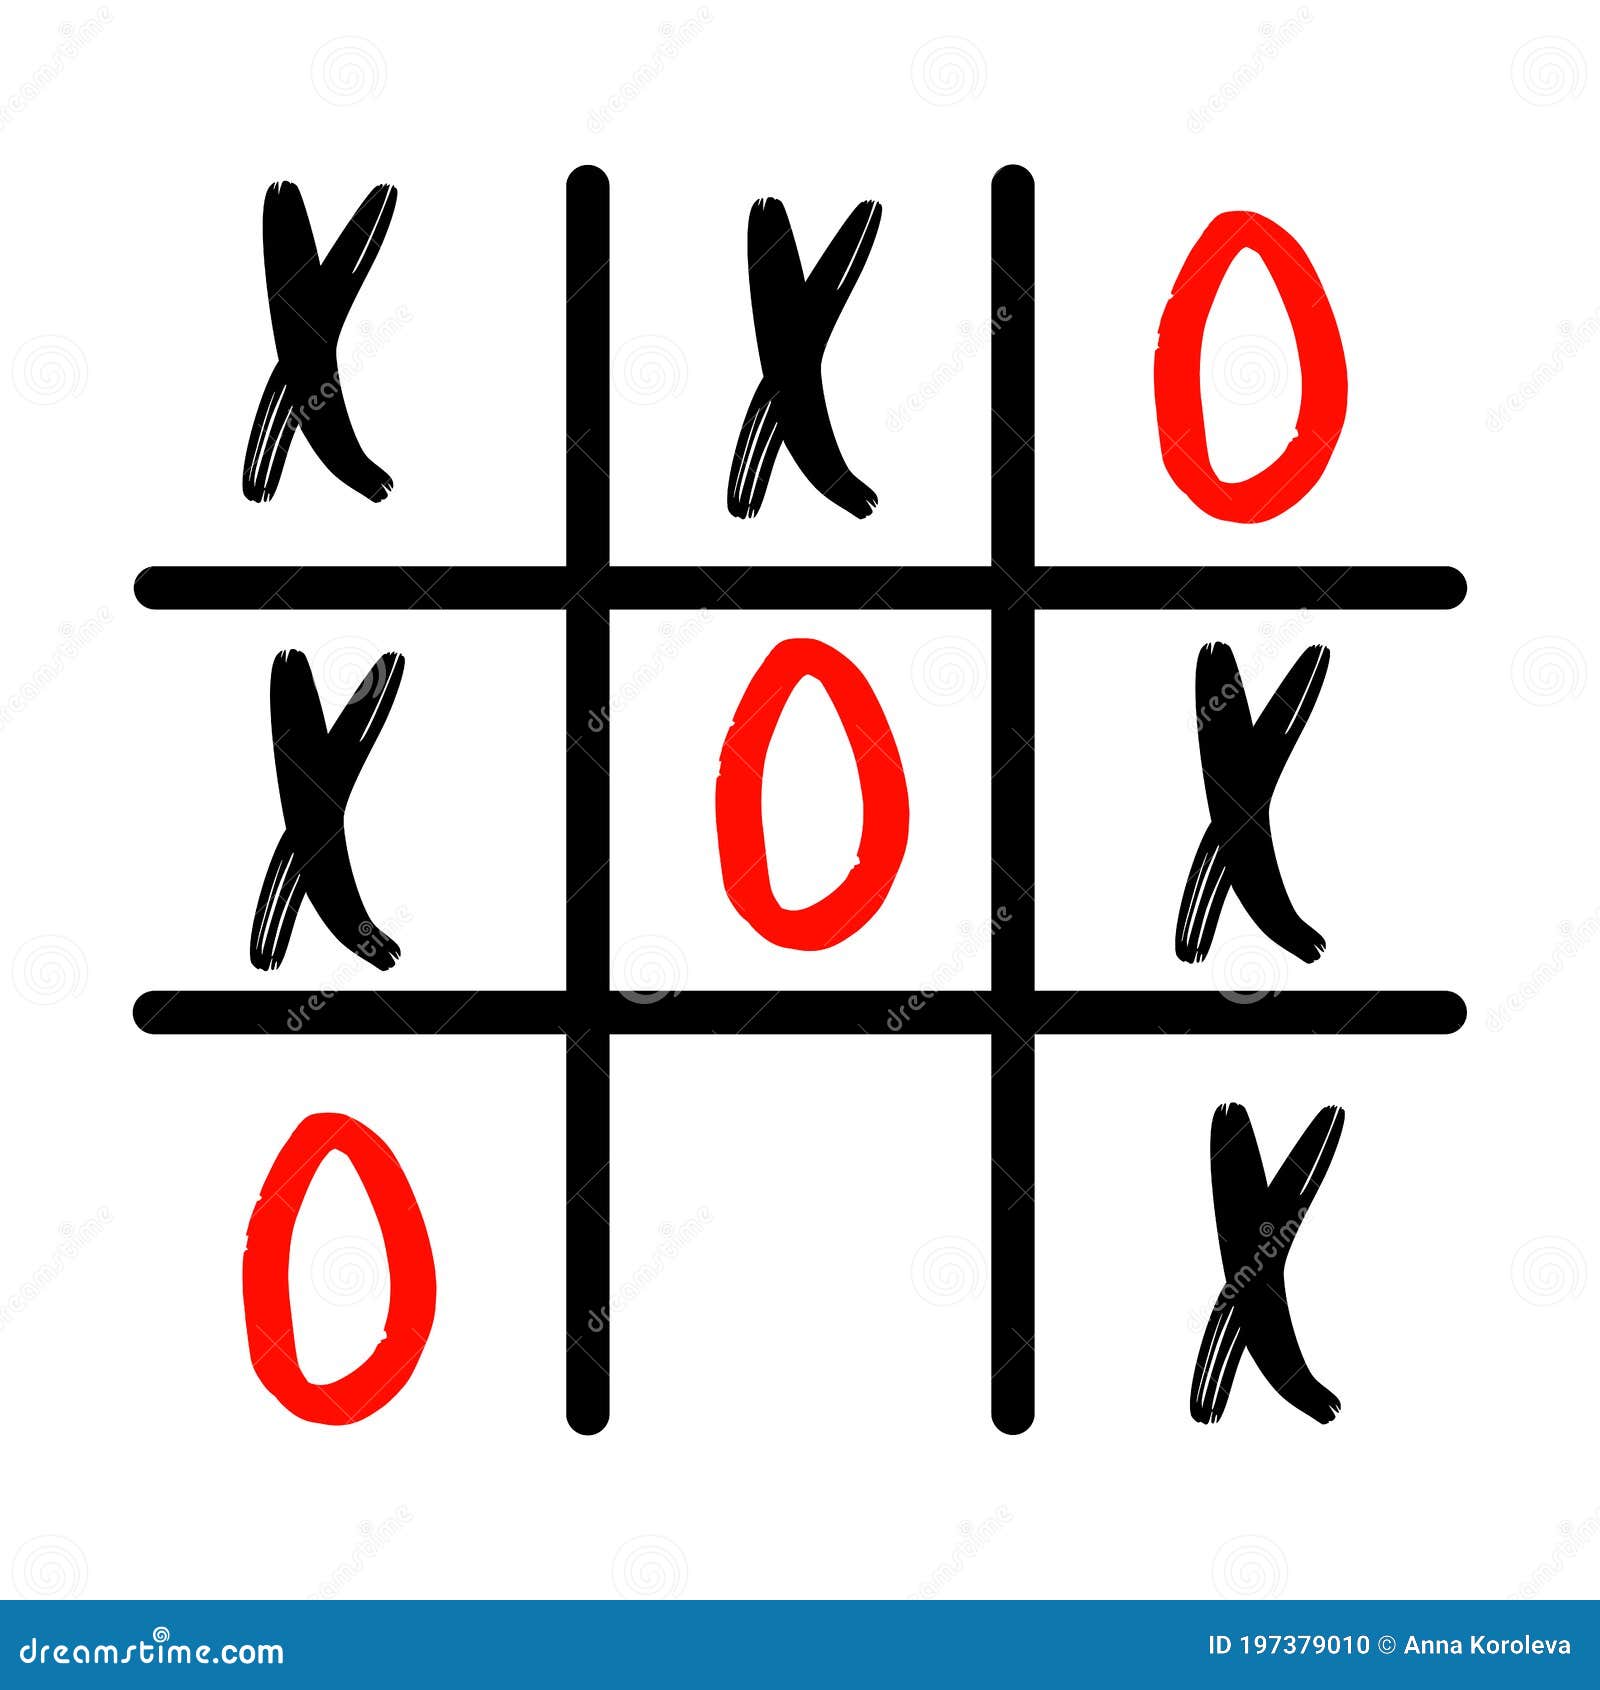 Xox game